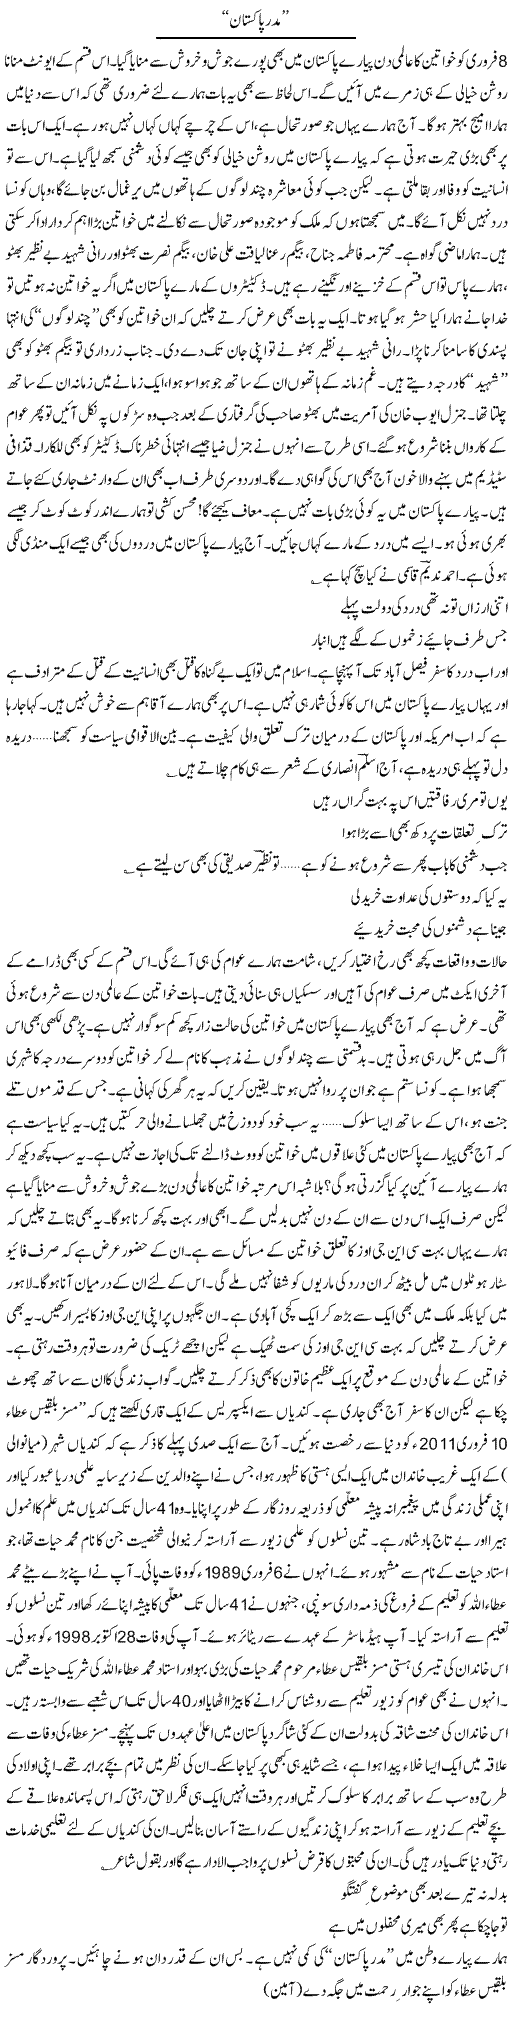 Mother of Pakistan Express Column Ijaz Hafeez 13 March 2011